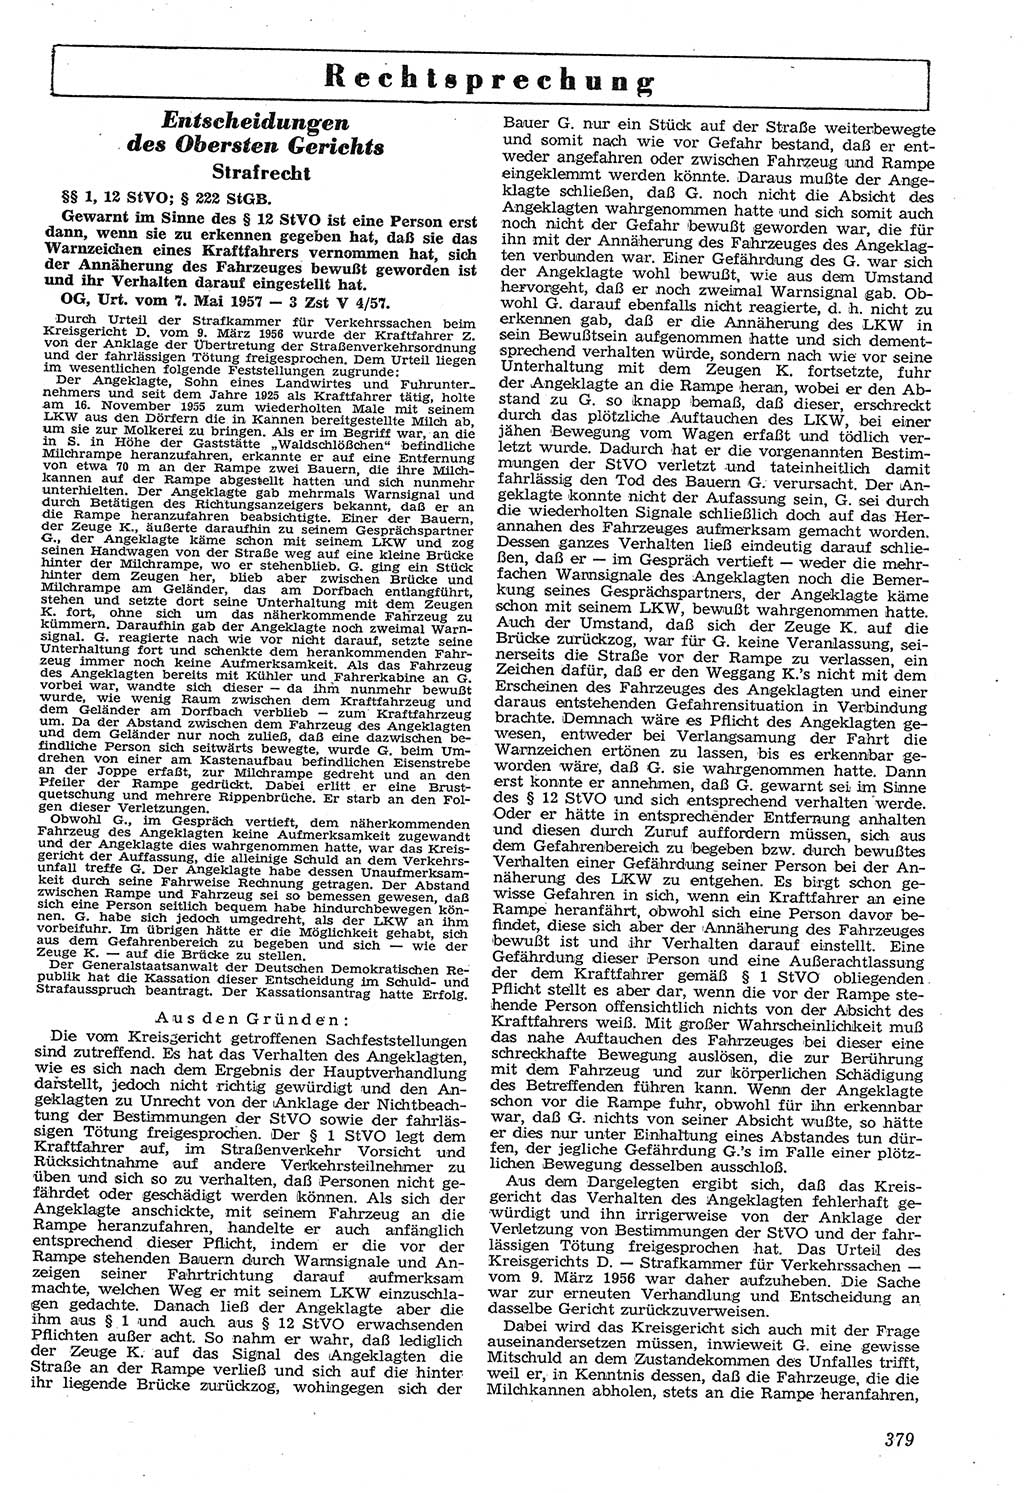 Neue Justiz (NJ), Zeitschrift für Recht und Rechtswissenschaft [Deutsche Demokratische Republik (DDR)], 11. Jahrgang 1957, Seite 379 (NJ DDR 1957, S. 379)